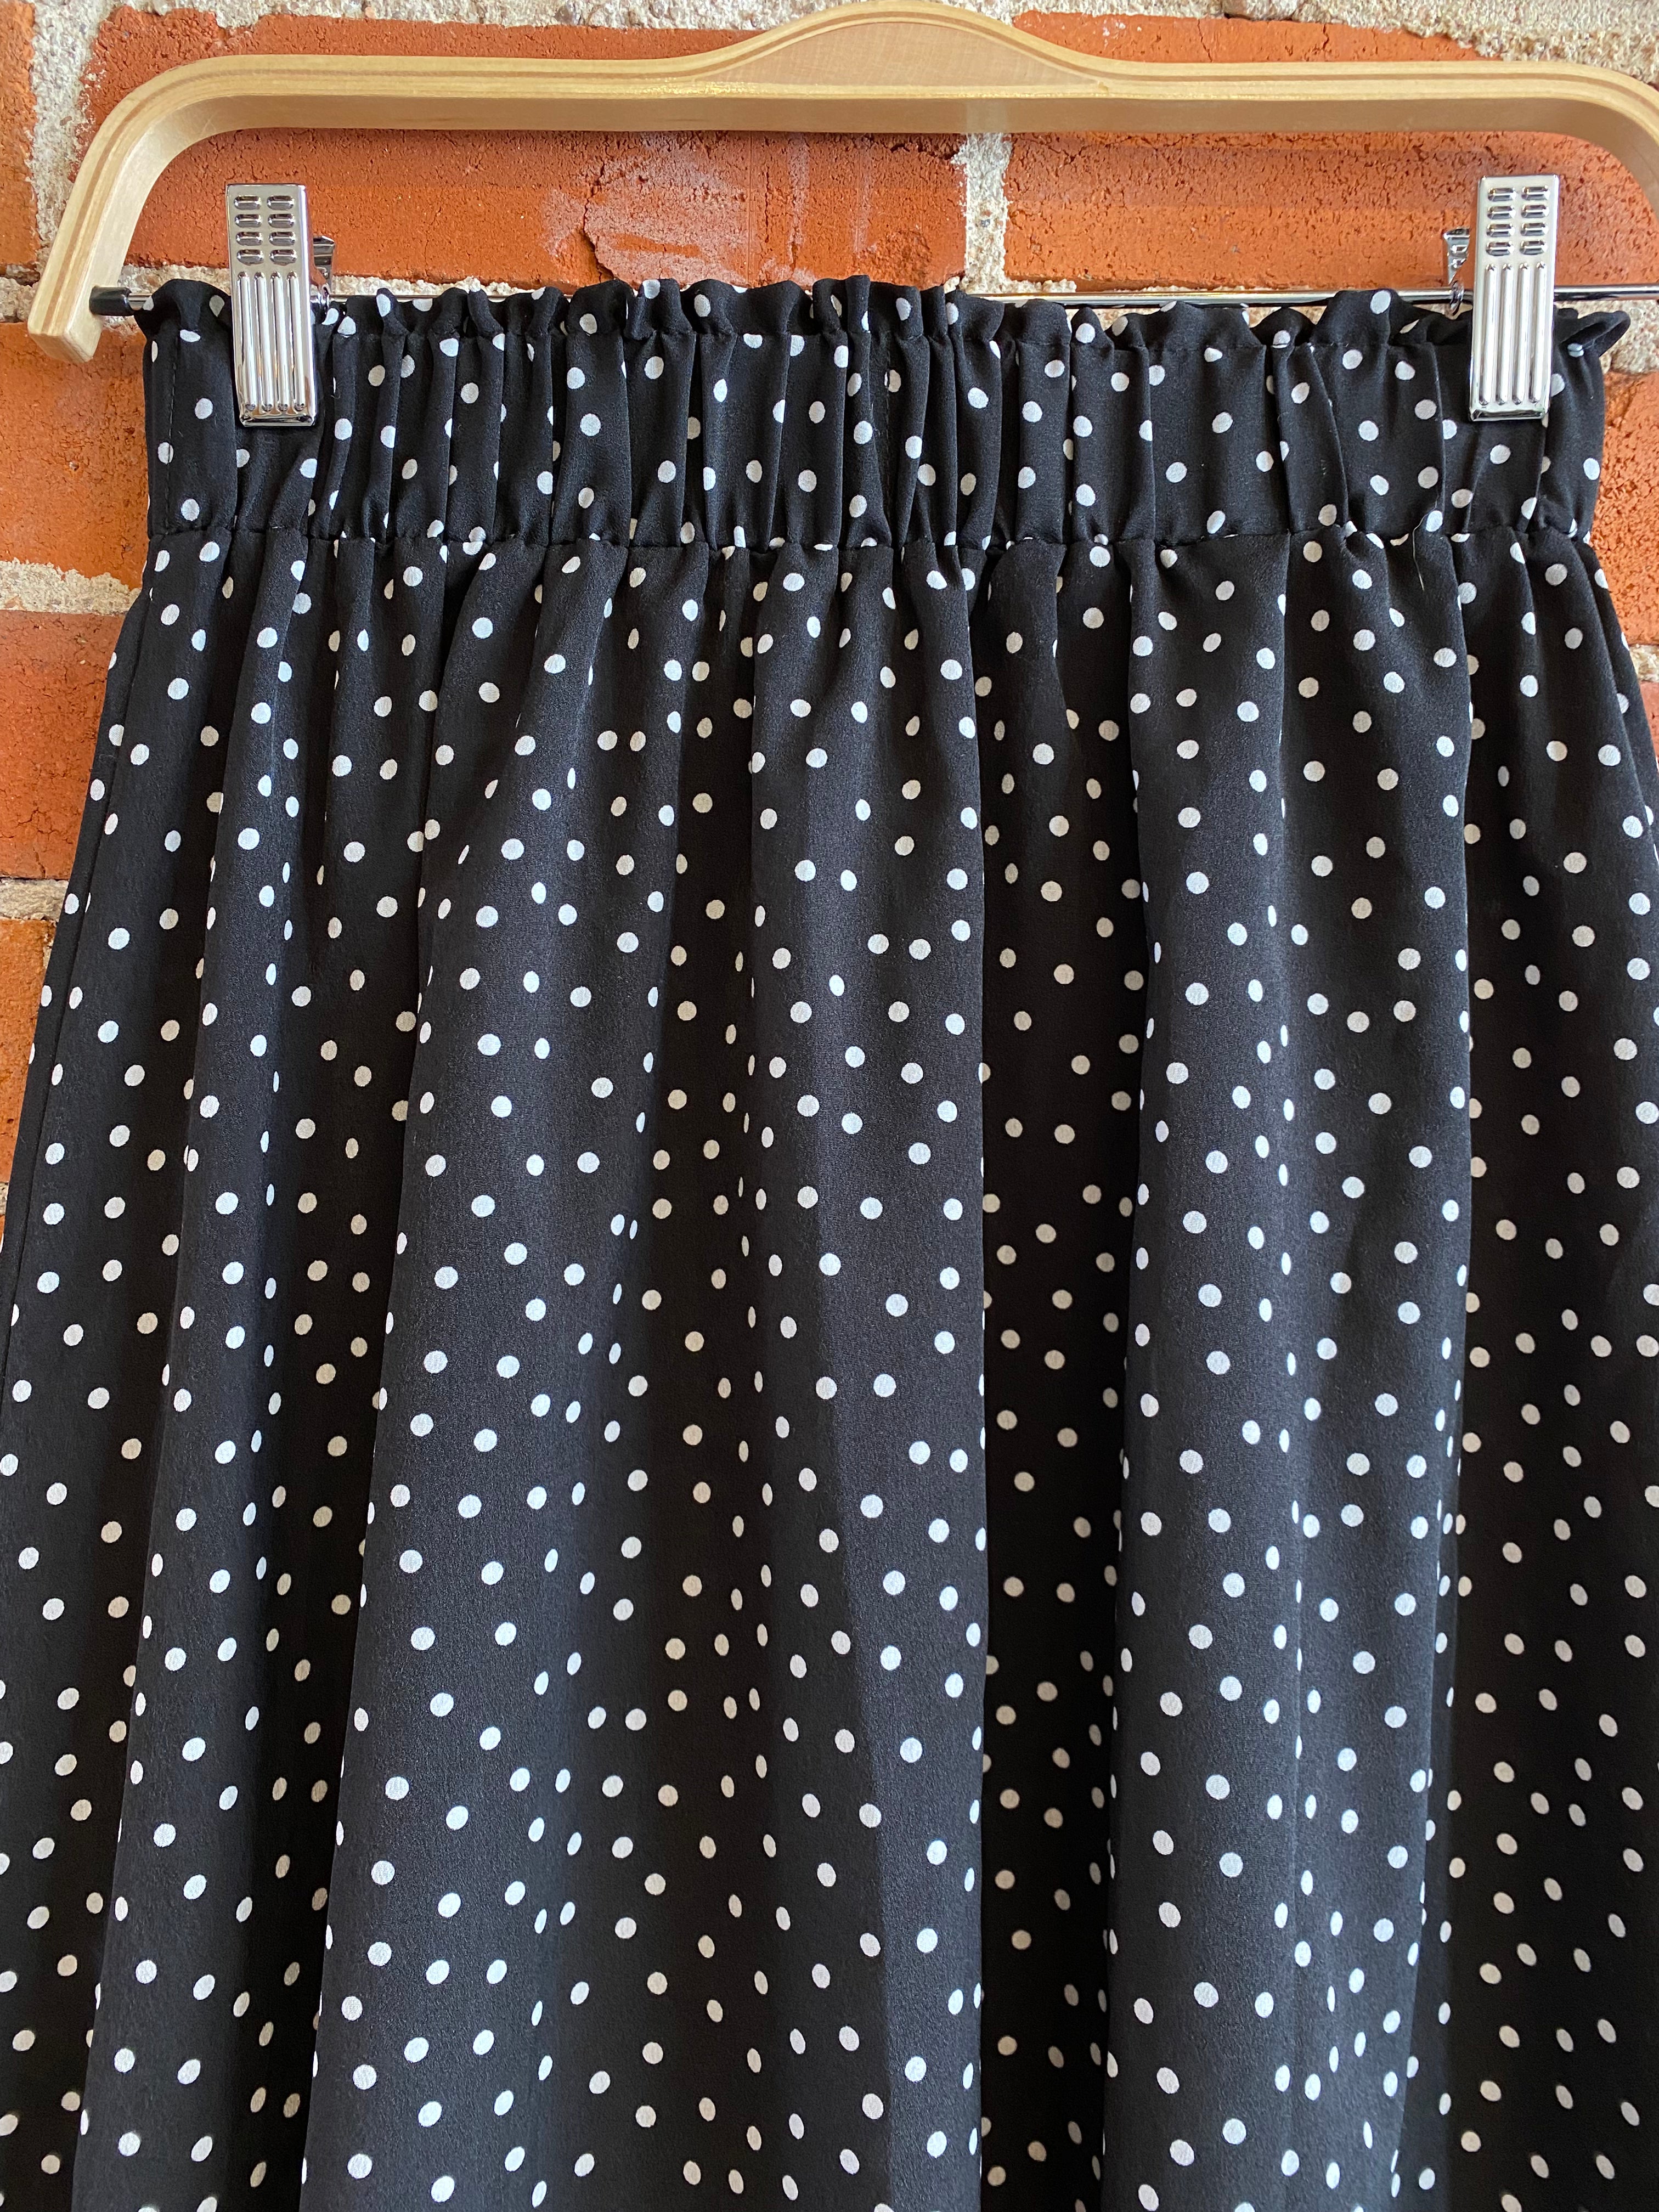 
  
  Black and white polka dot midi skirt
  
